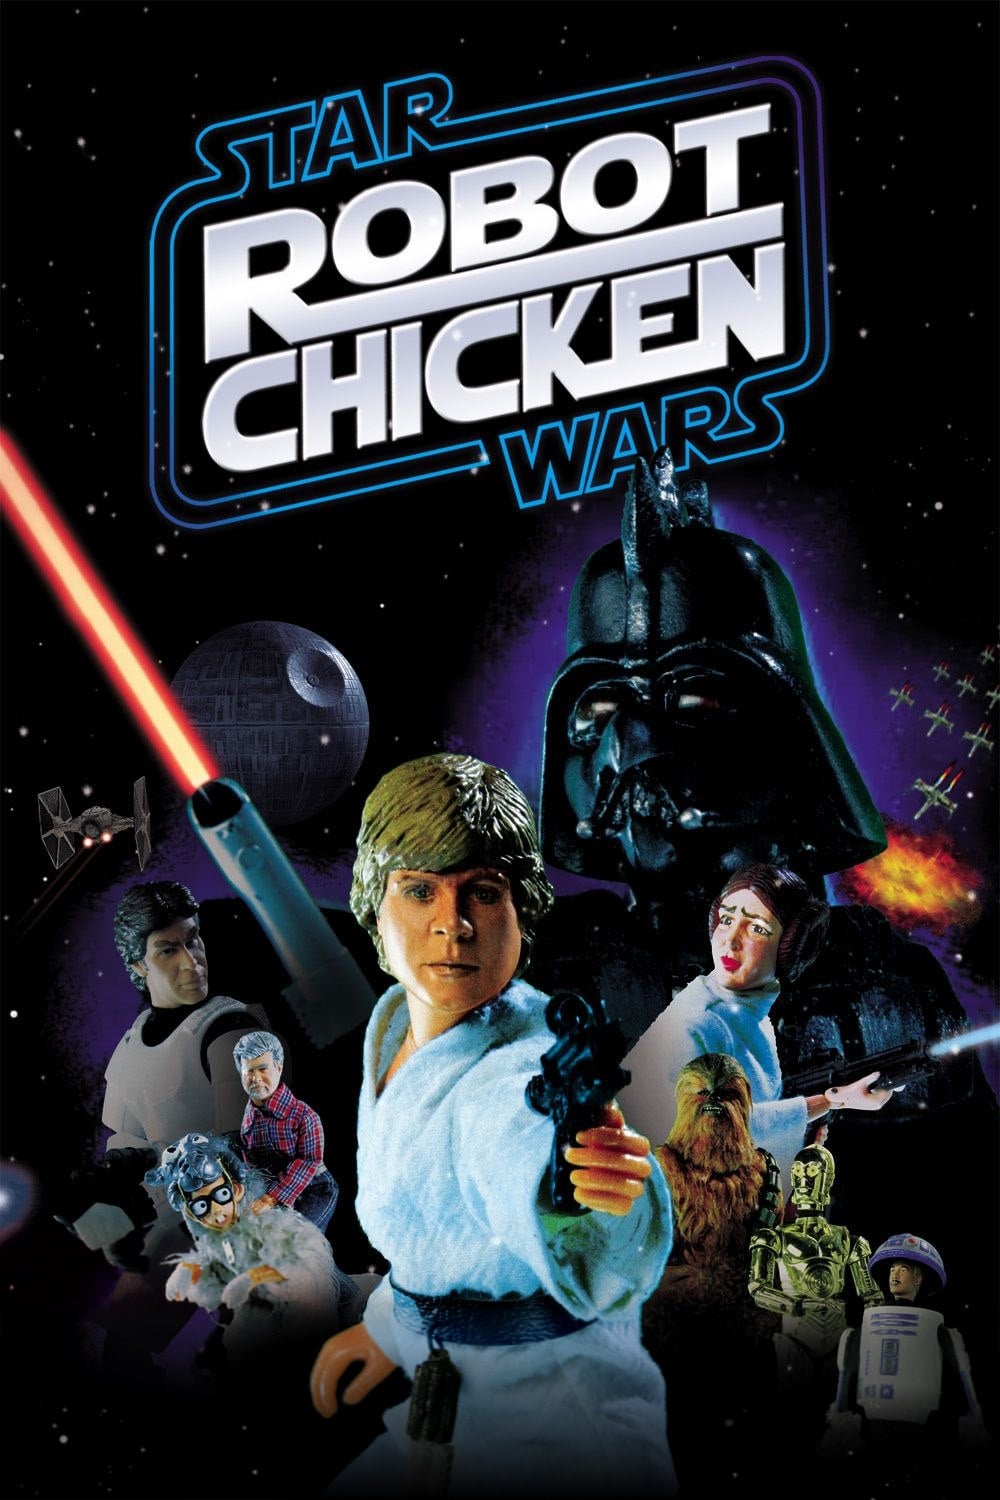 Robot Chicken: Star Wars Episodio I